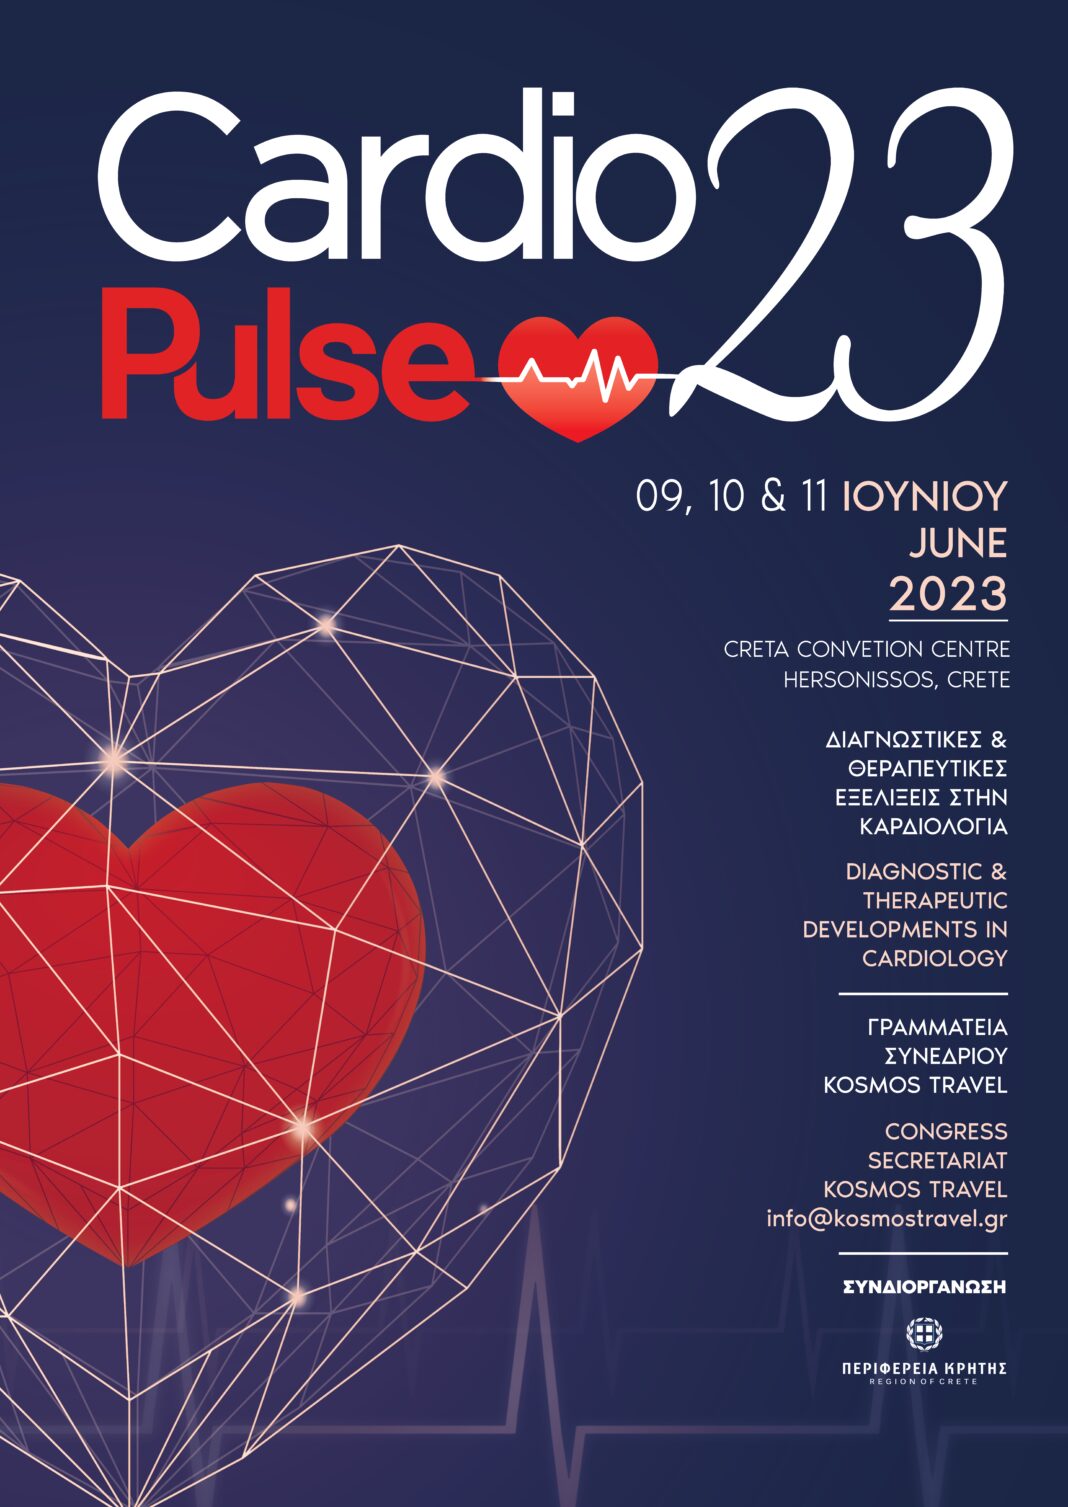 Ξεκινά στη Χερσόνησο το Cardio Pulse 2023 με την στήριξη της Περιφέρειας Κρήτης